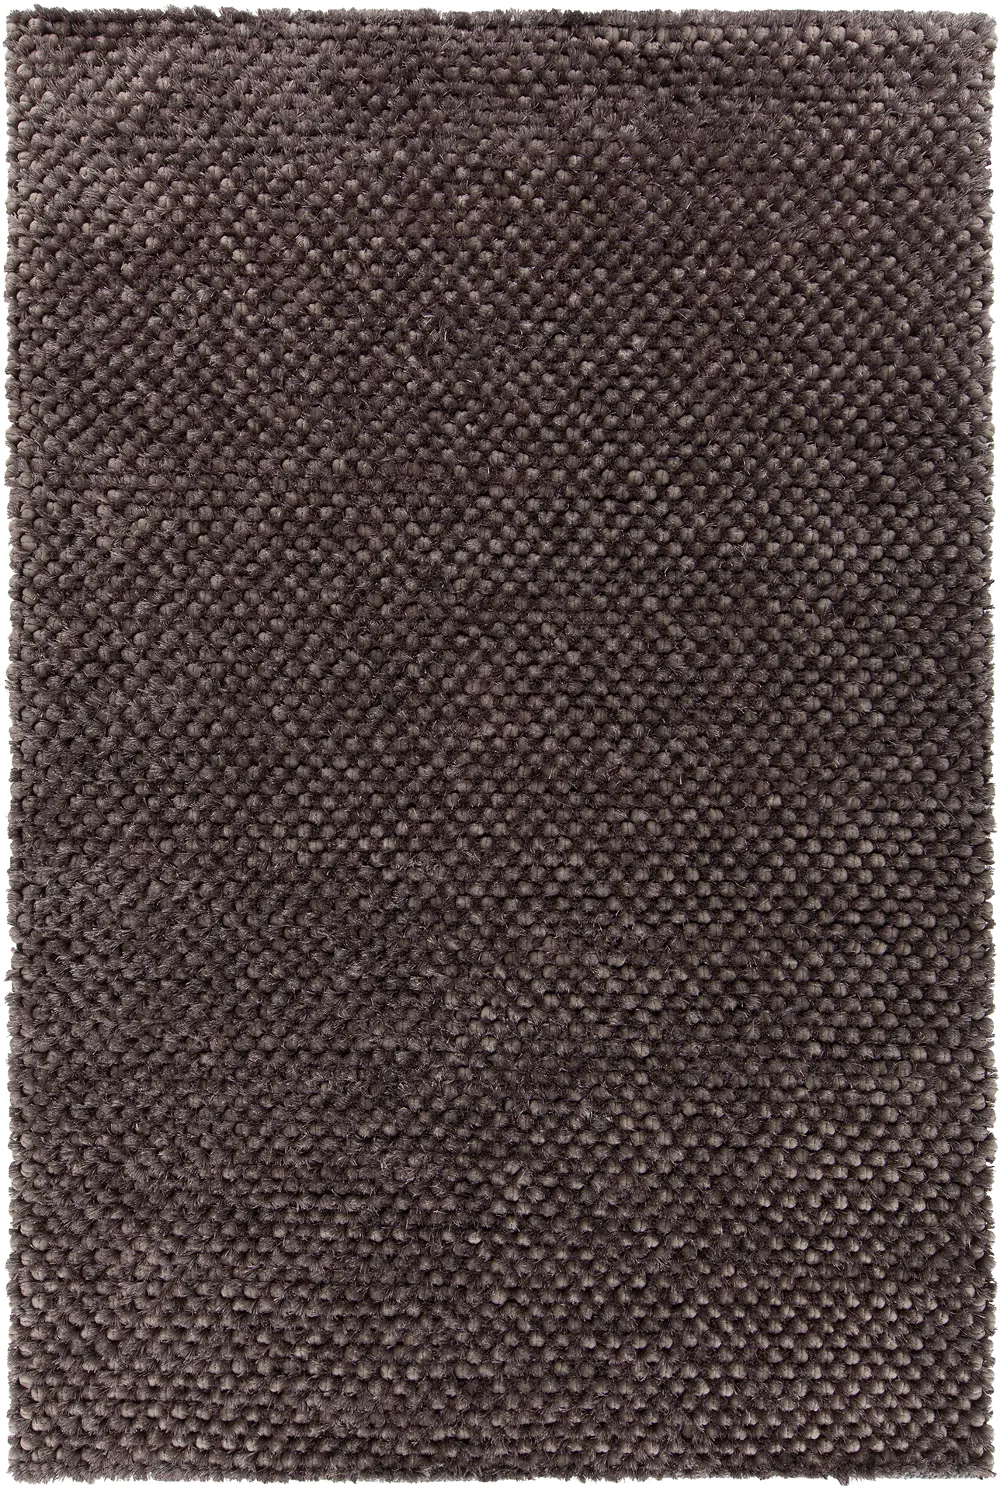 5 x 8 Medium Contemporary Gray Area Rug - Cinzia-1